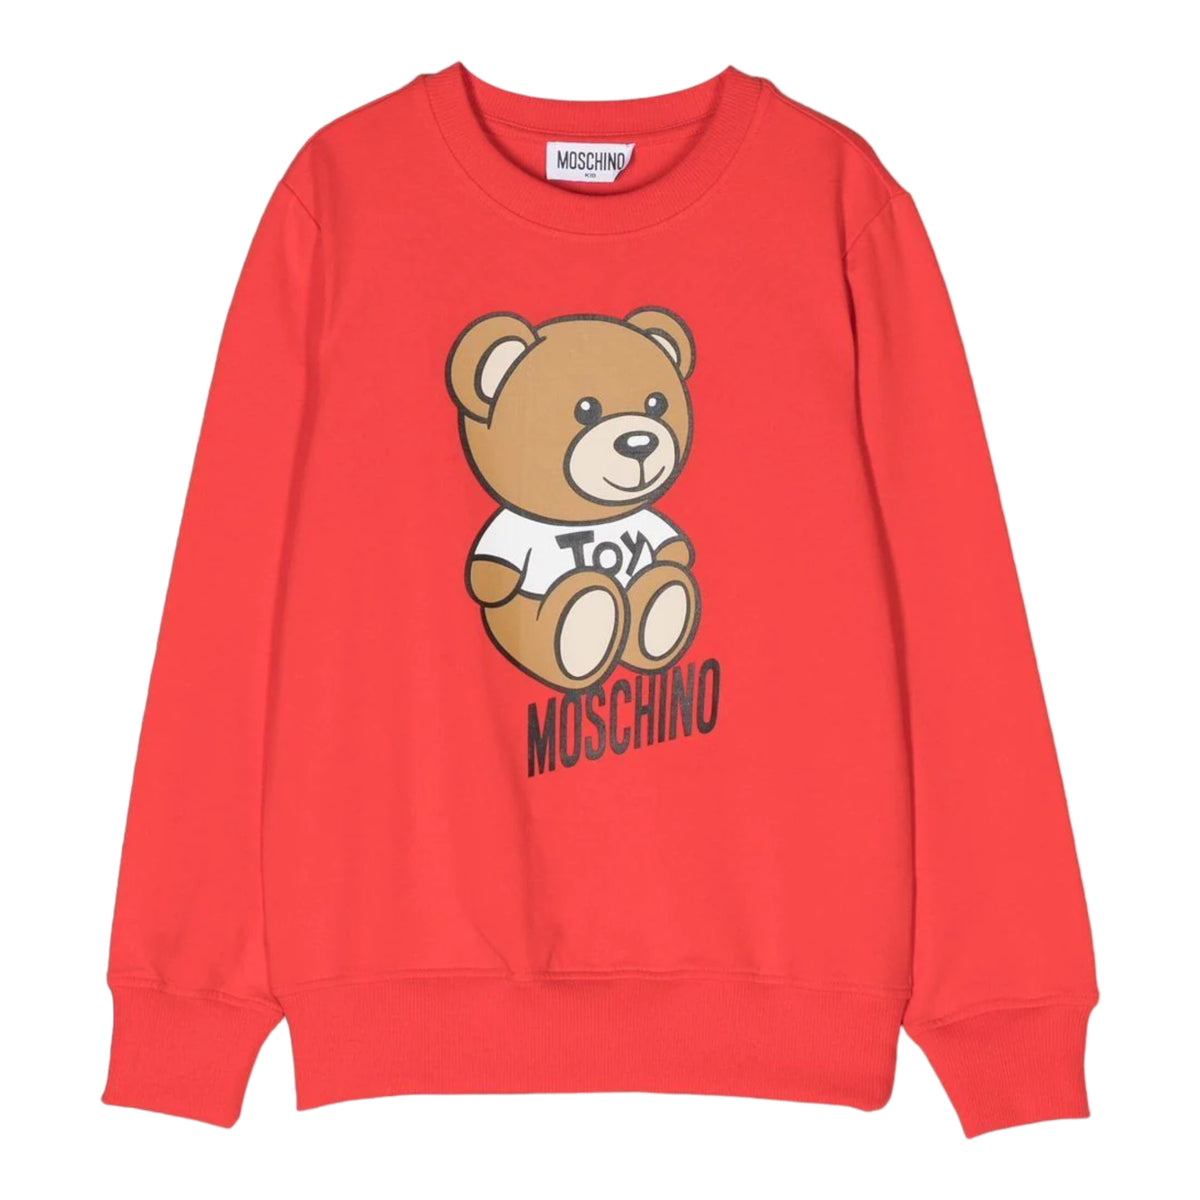 Moschino Kid's Toy Bear Sweatshirt